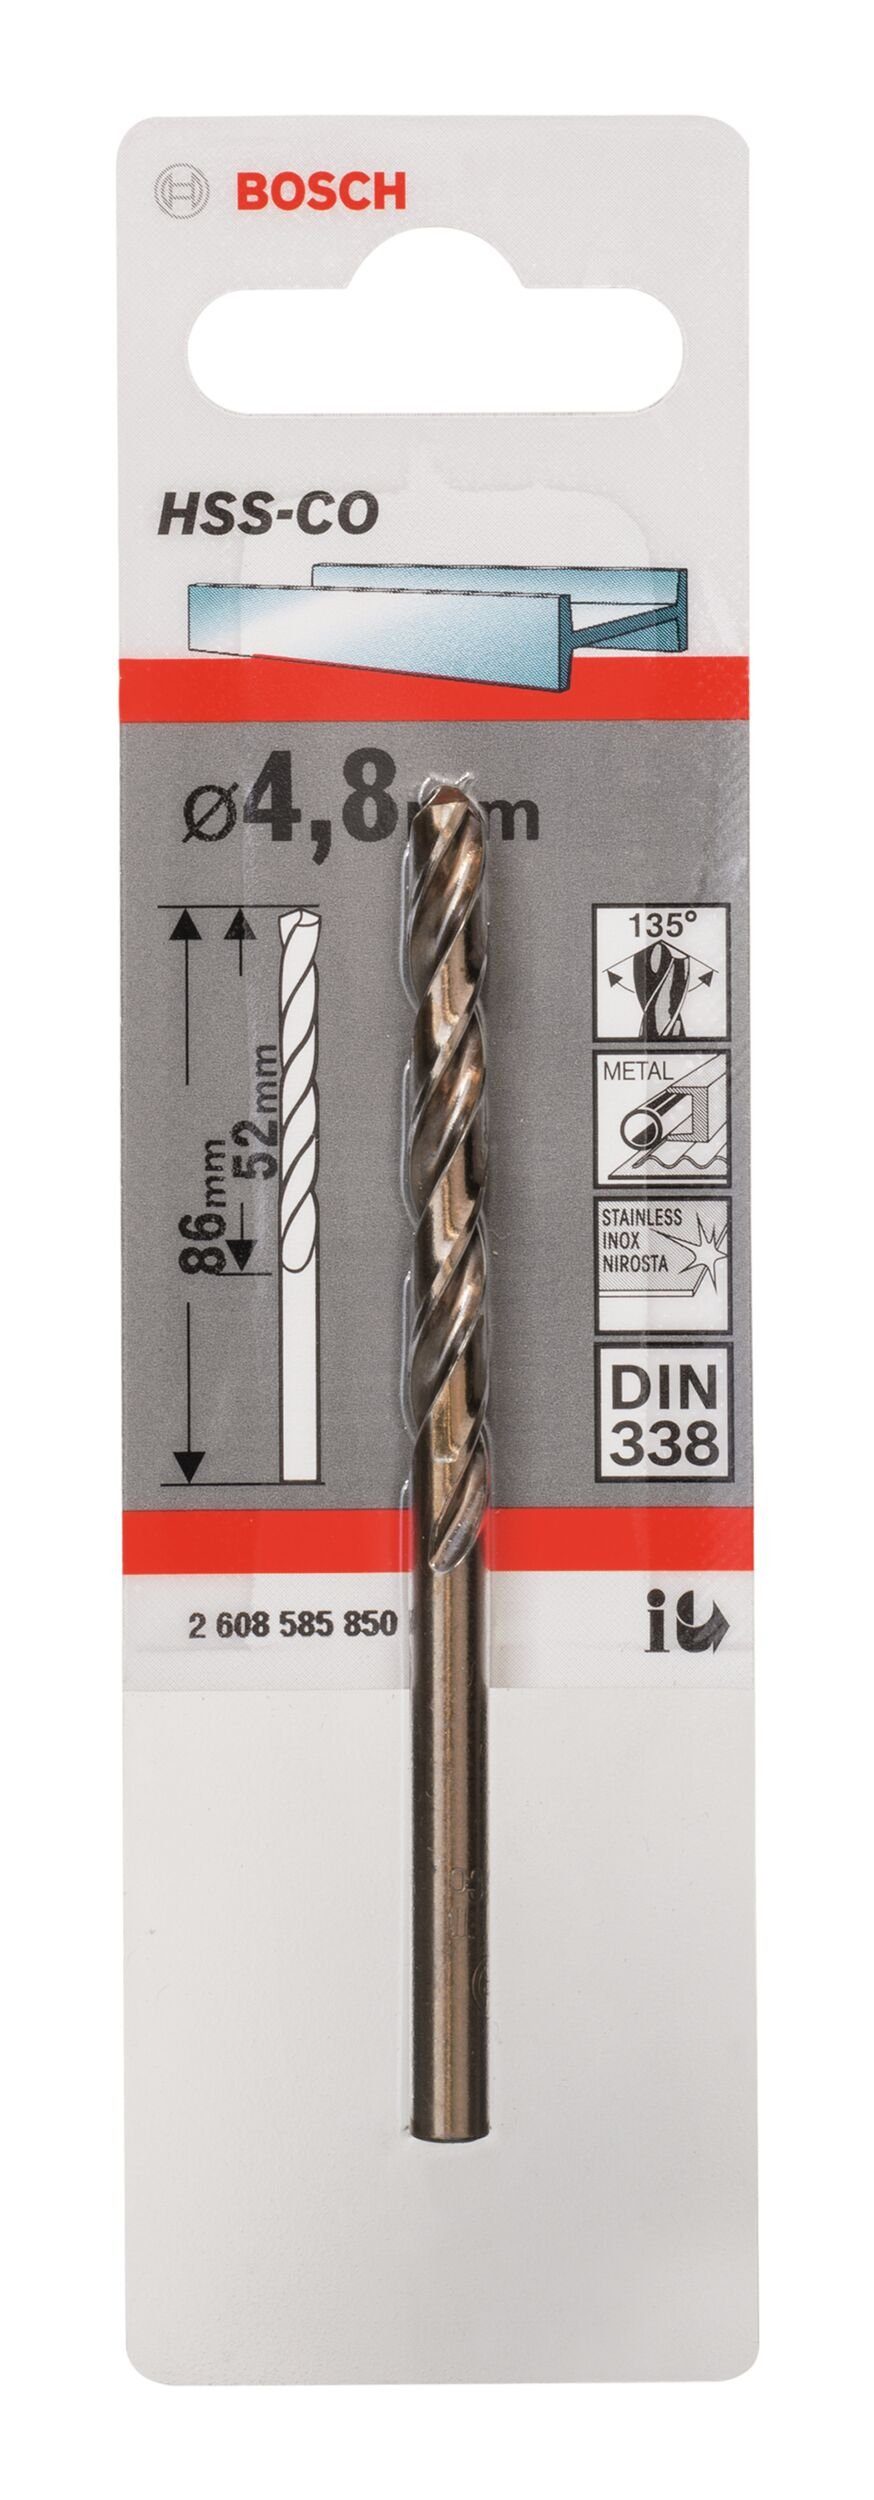 BOSCH Metallbohrer, HSS-Co (DIN mm 338) - x 52 x 86 1er-Pack 4,8 